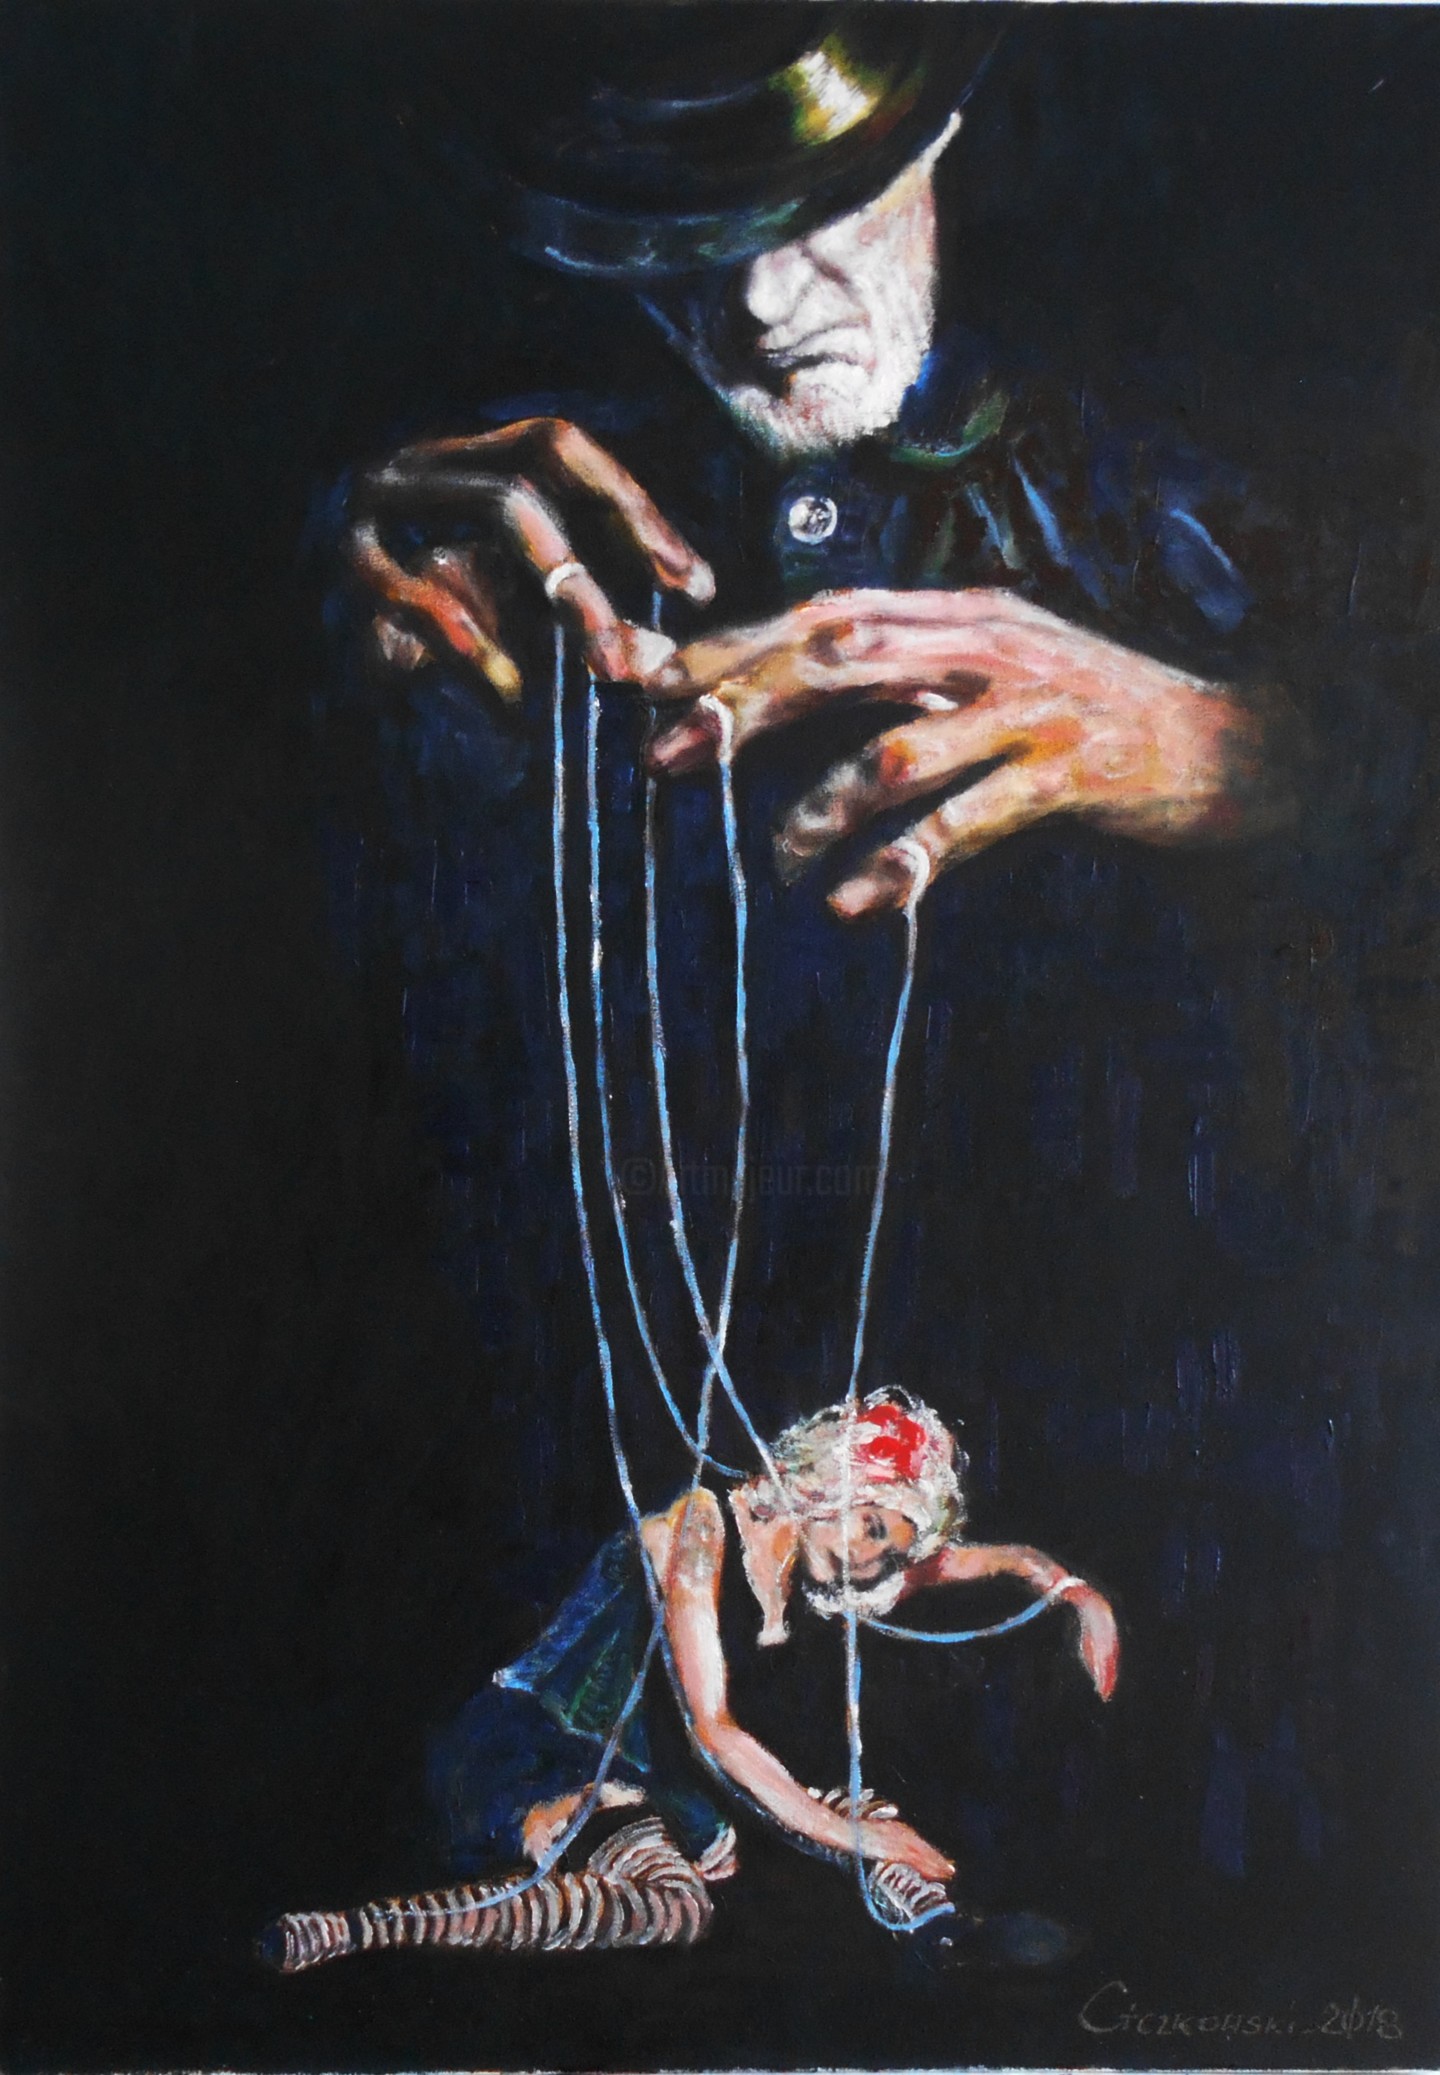 Puppet Master, Painting by Leszek Gaczkowski